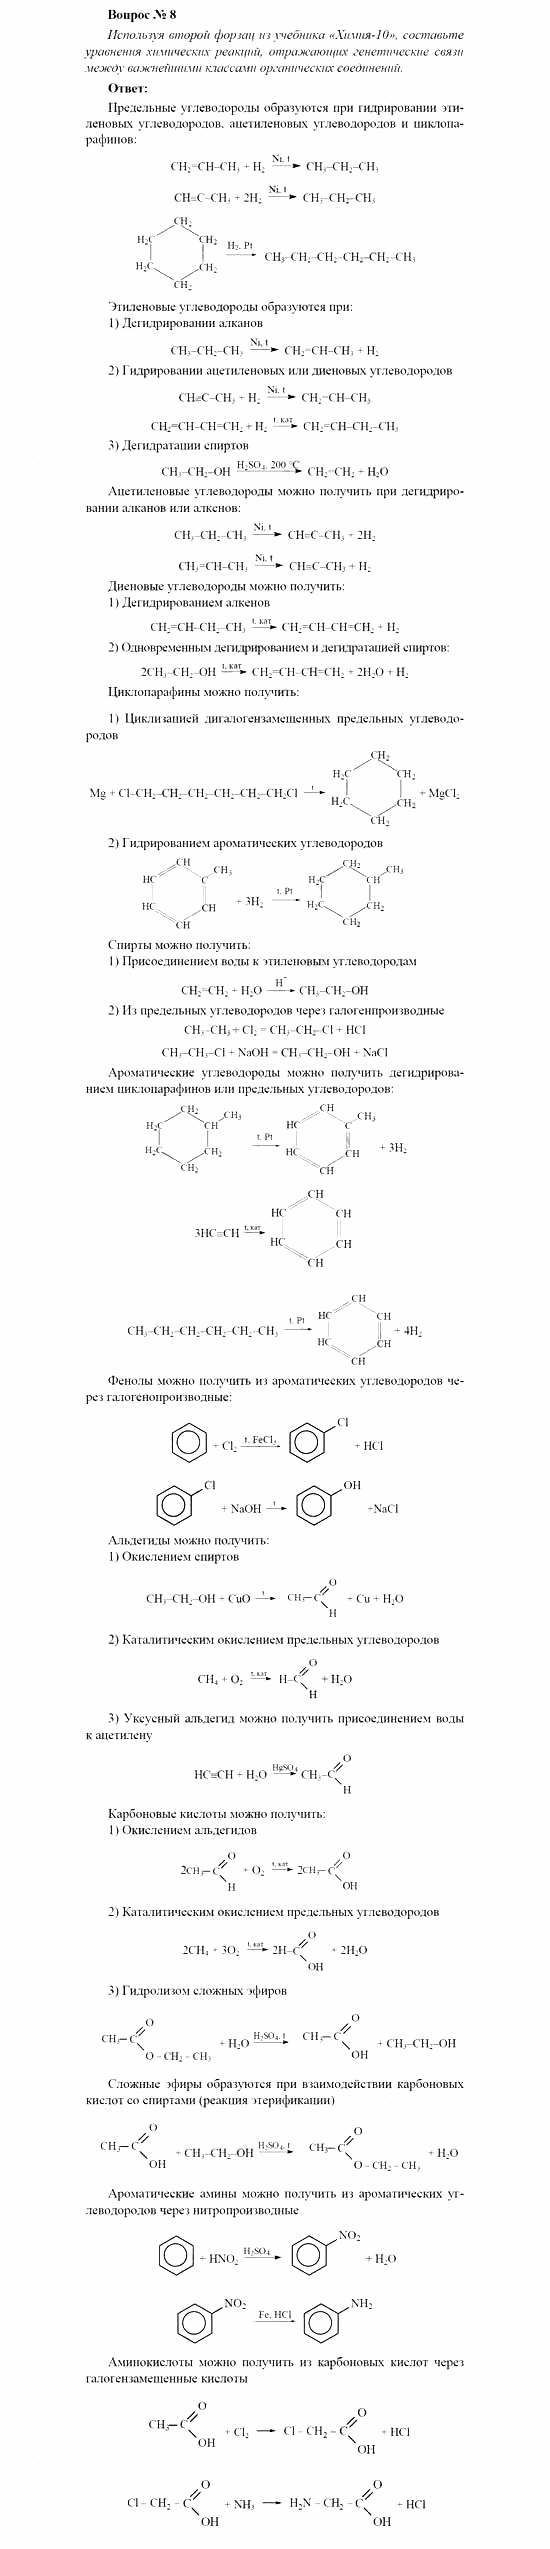 Химия, 11 класс, Рудзитис, Фельдман, 2000-2013, Глава XIV. Обобщение знаний по курсу органической химии, Задачи к §§1-5 (стр. 53) Задача: Вопрос № 8